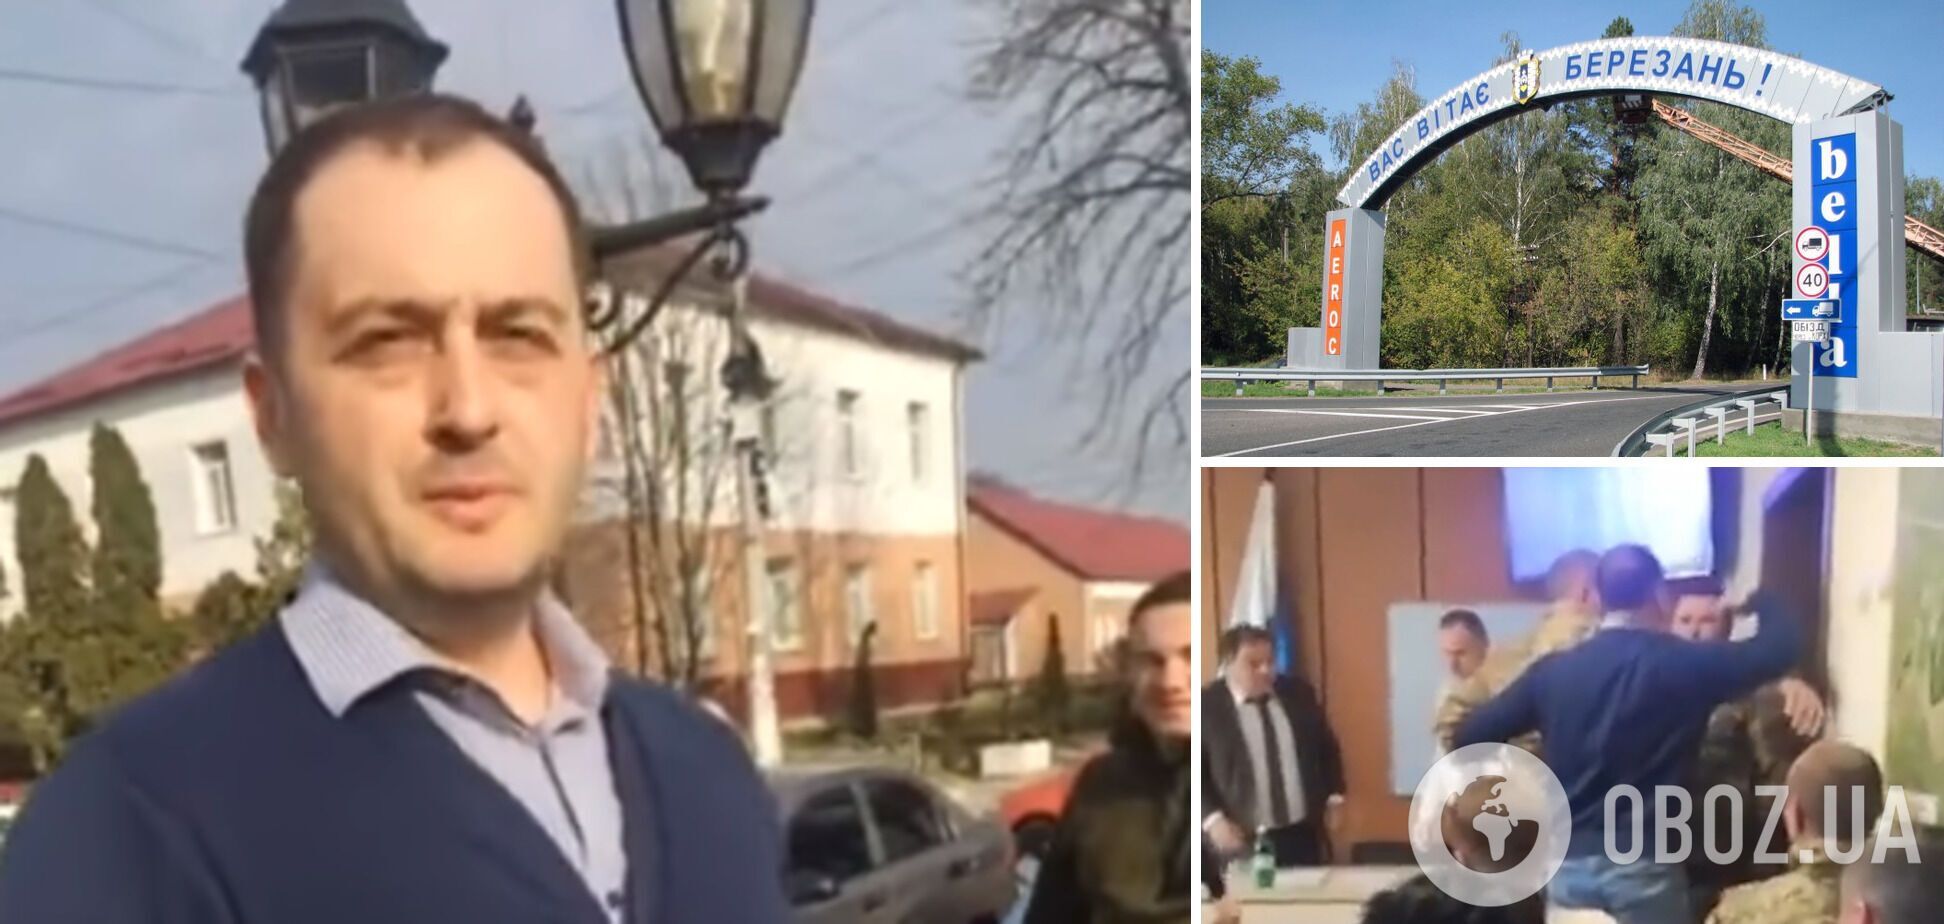 Сын мэра Березани Сергей Тимченко ударил военного во время сессии горсовета